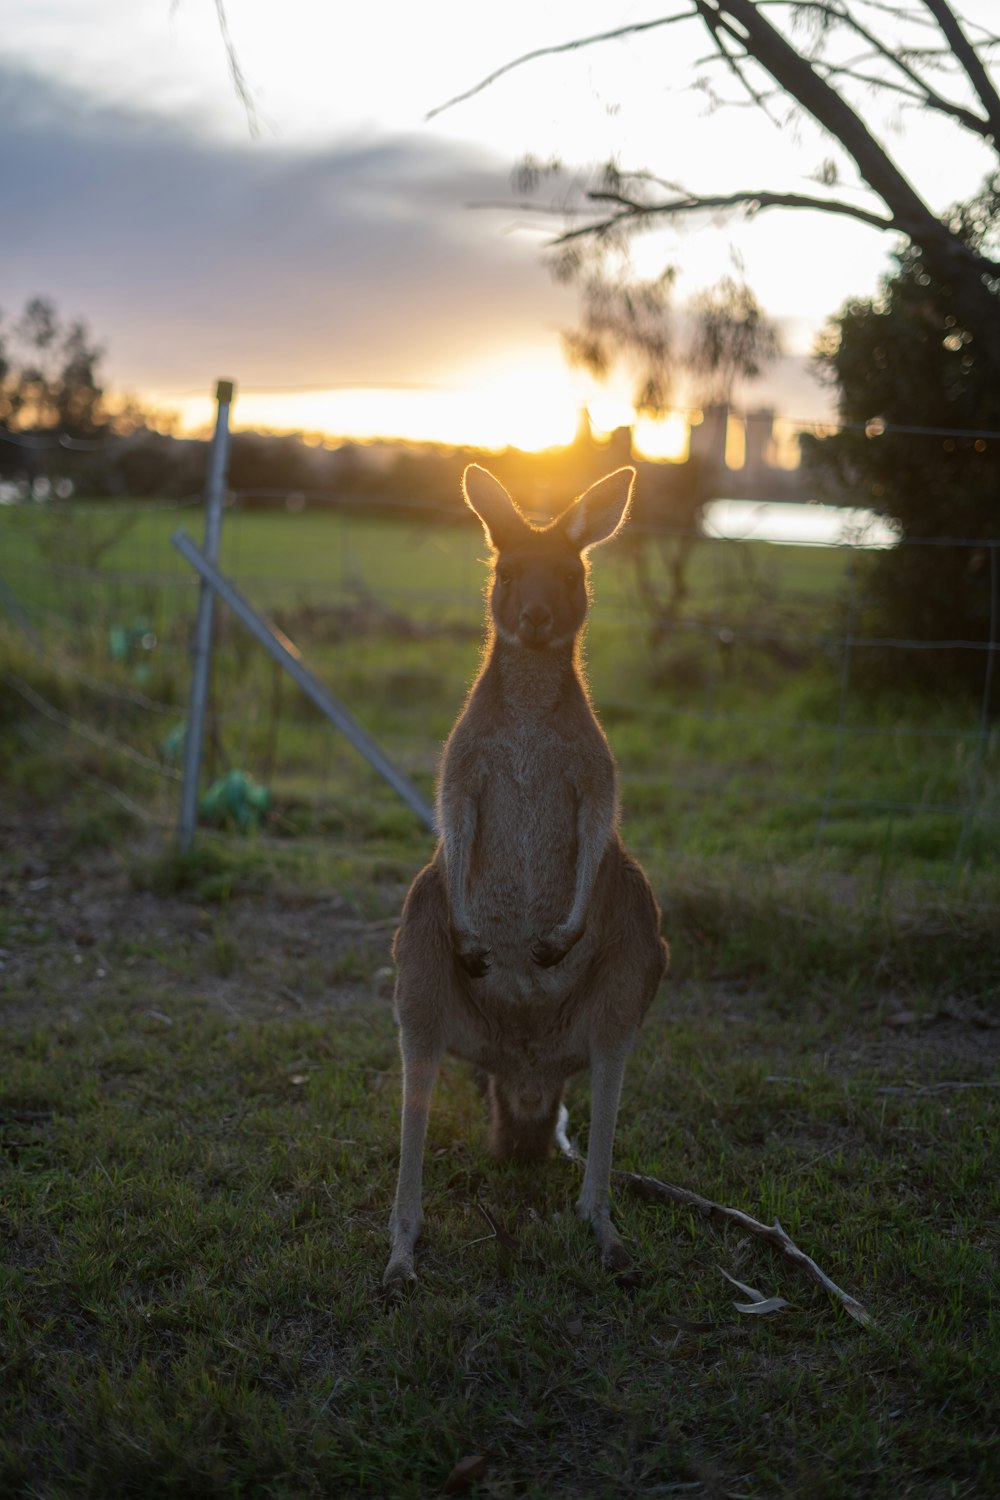 brown kangaroo sitting on green grass field during sunset